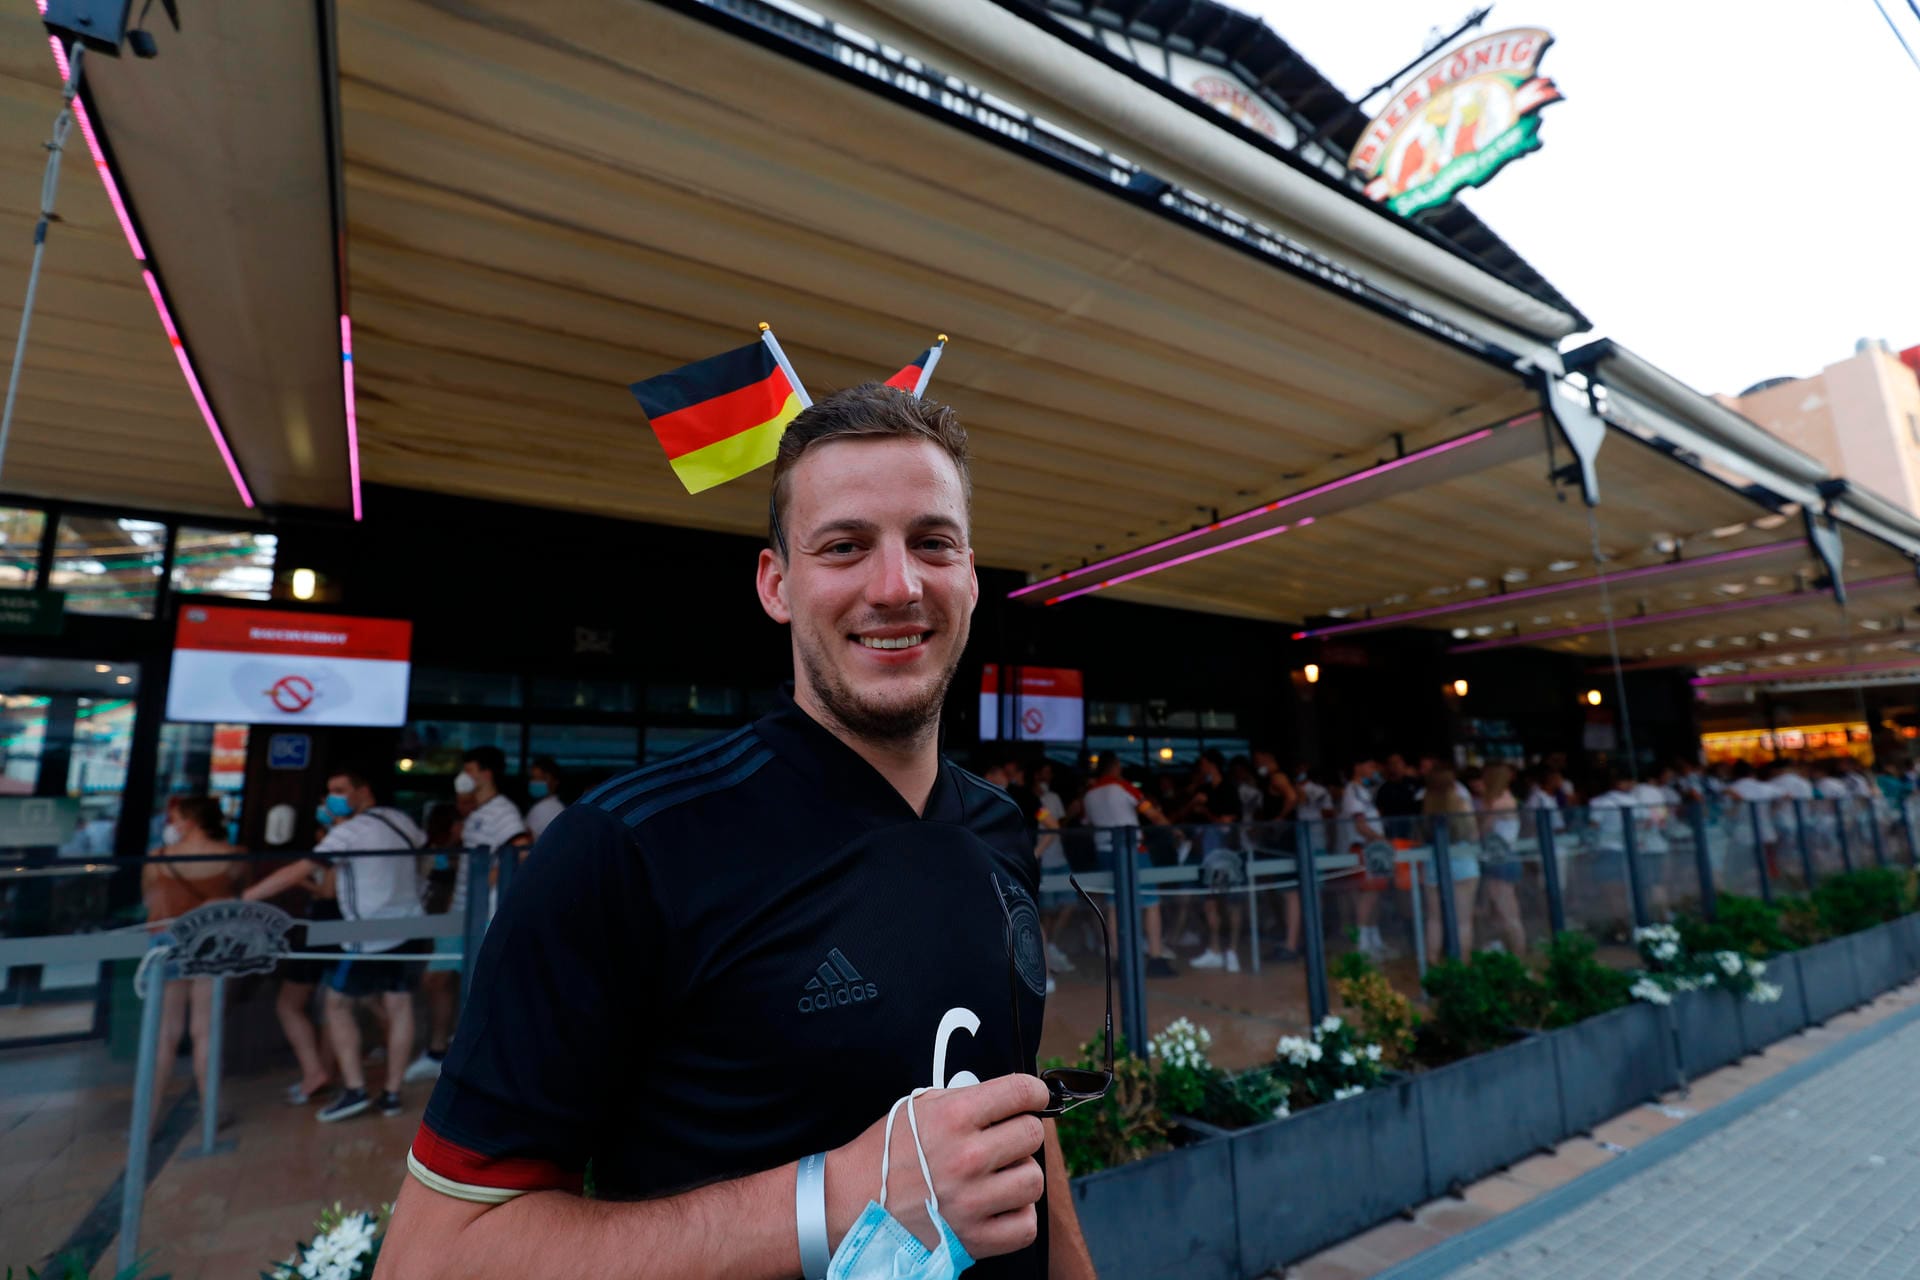 Gute Laune vor dem Anpfiff auf Mallorca: Tobias aus Stuttgart trägt Deutschland-Fähnchen, um seine Unterstützung für die deutsche Nationalmannschaft zu zeigen.